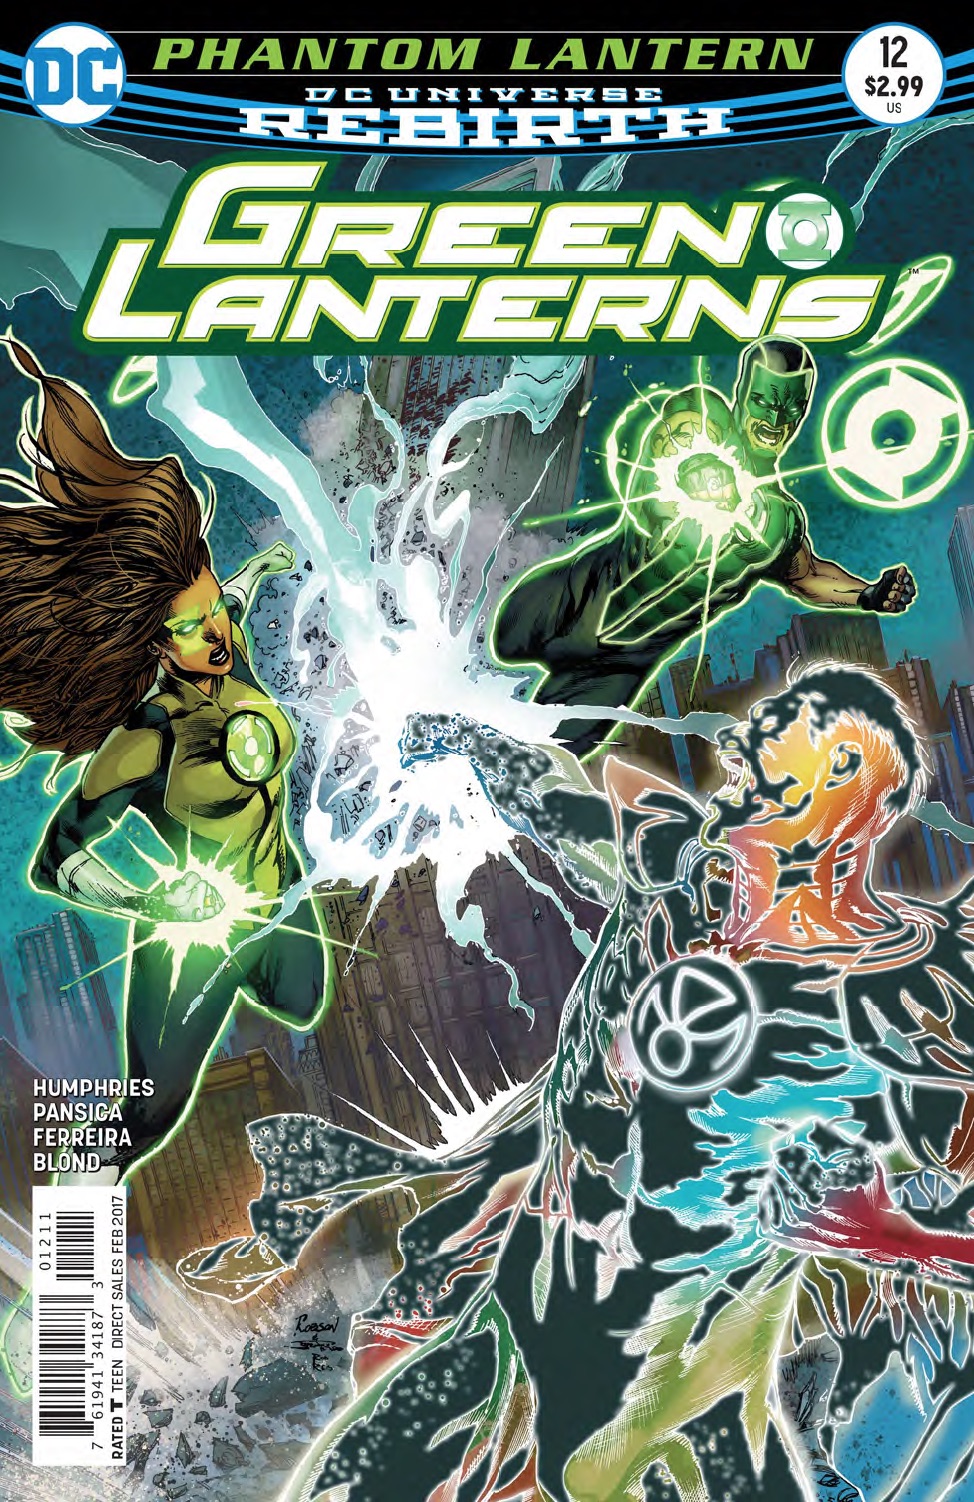 Green Lanterns #12 Review